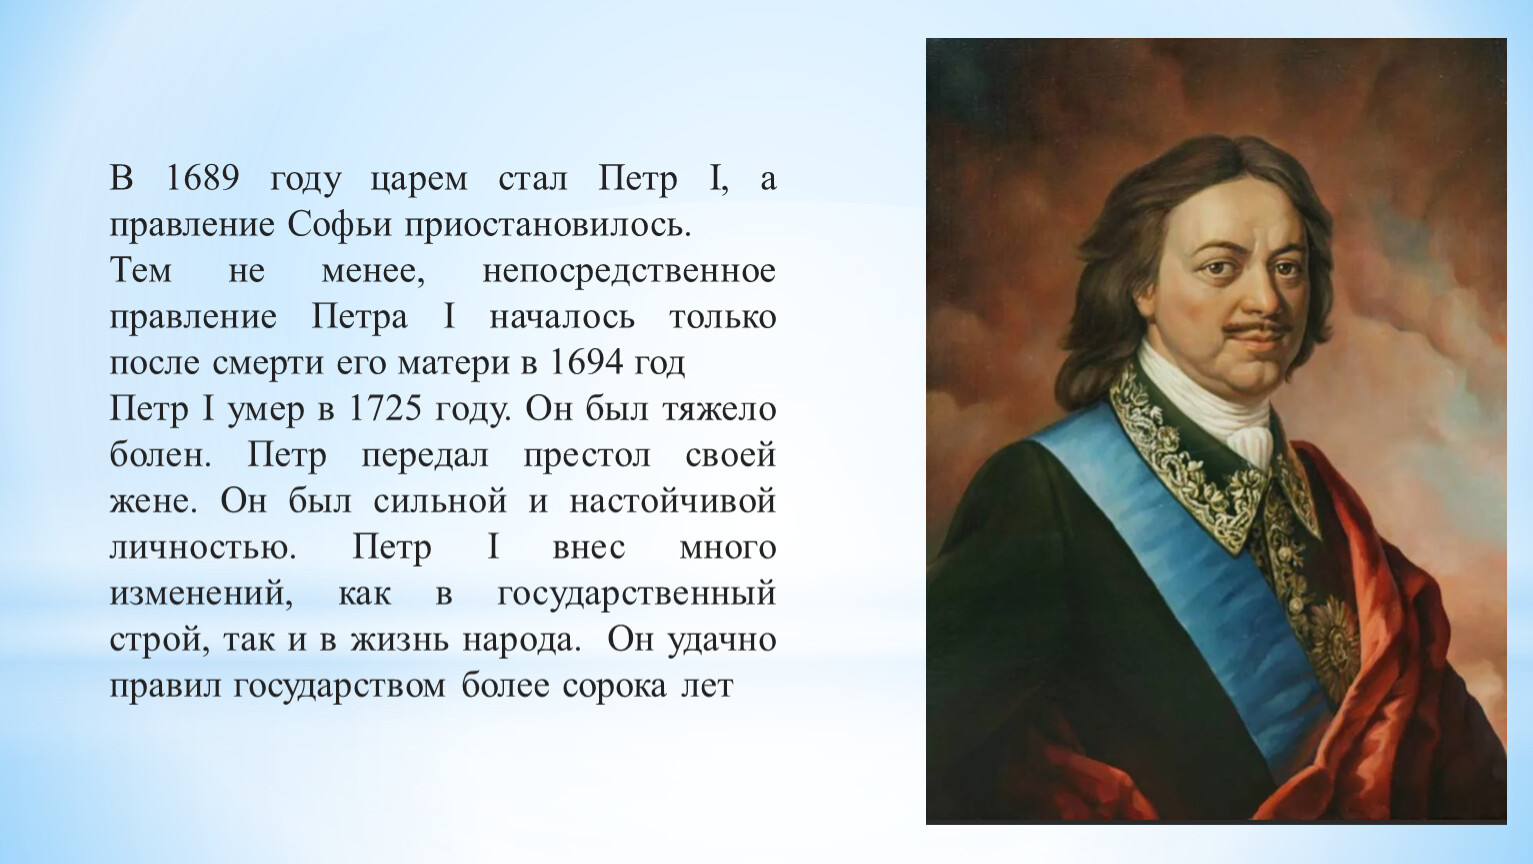 1689 событие в истории. Правление Петра 1 1689.